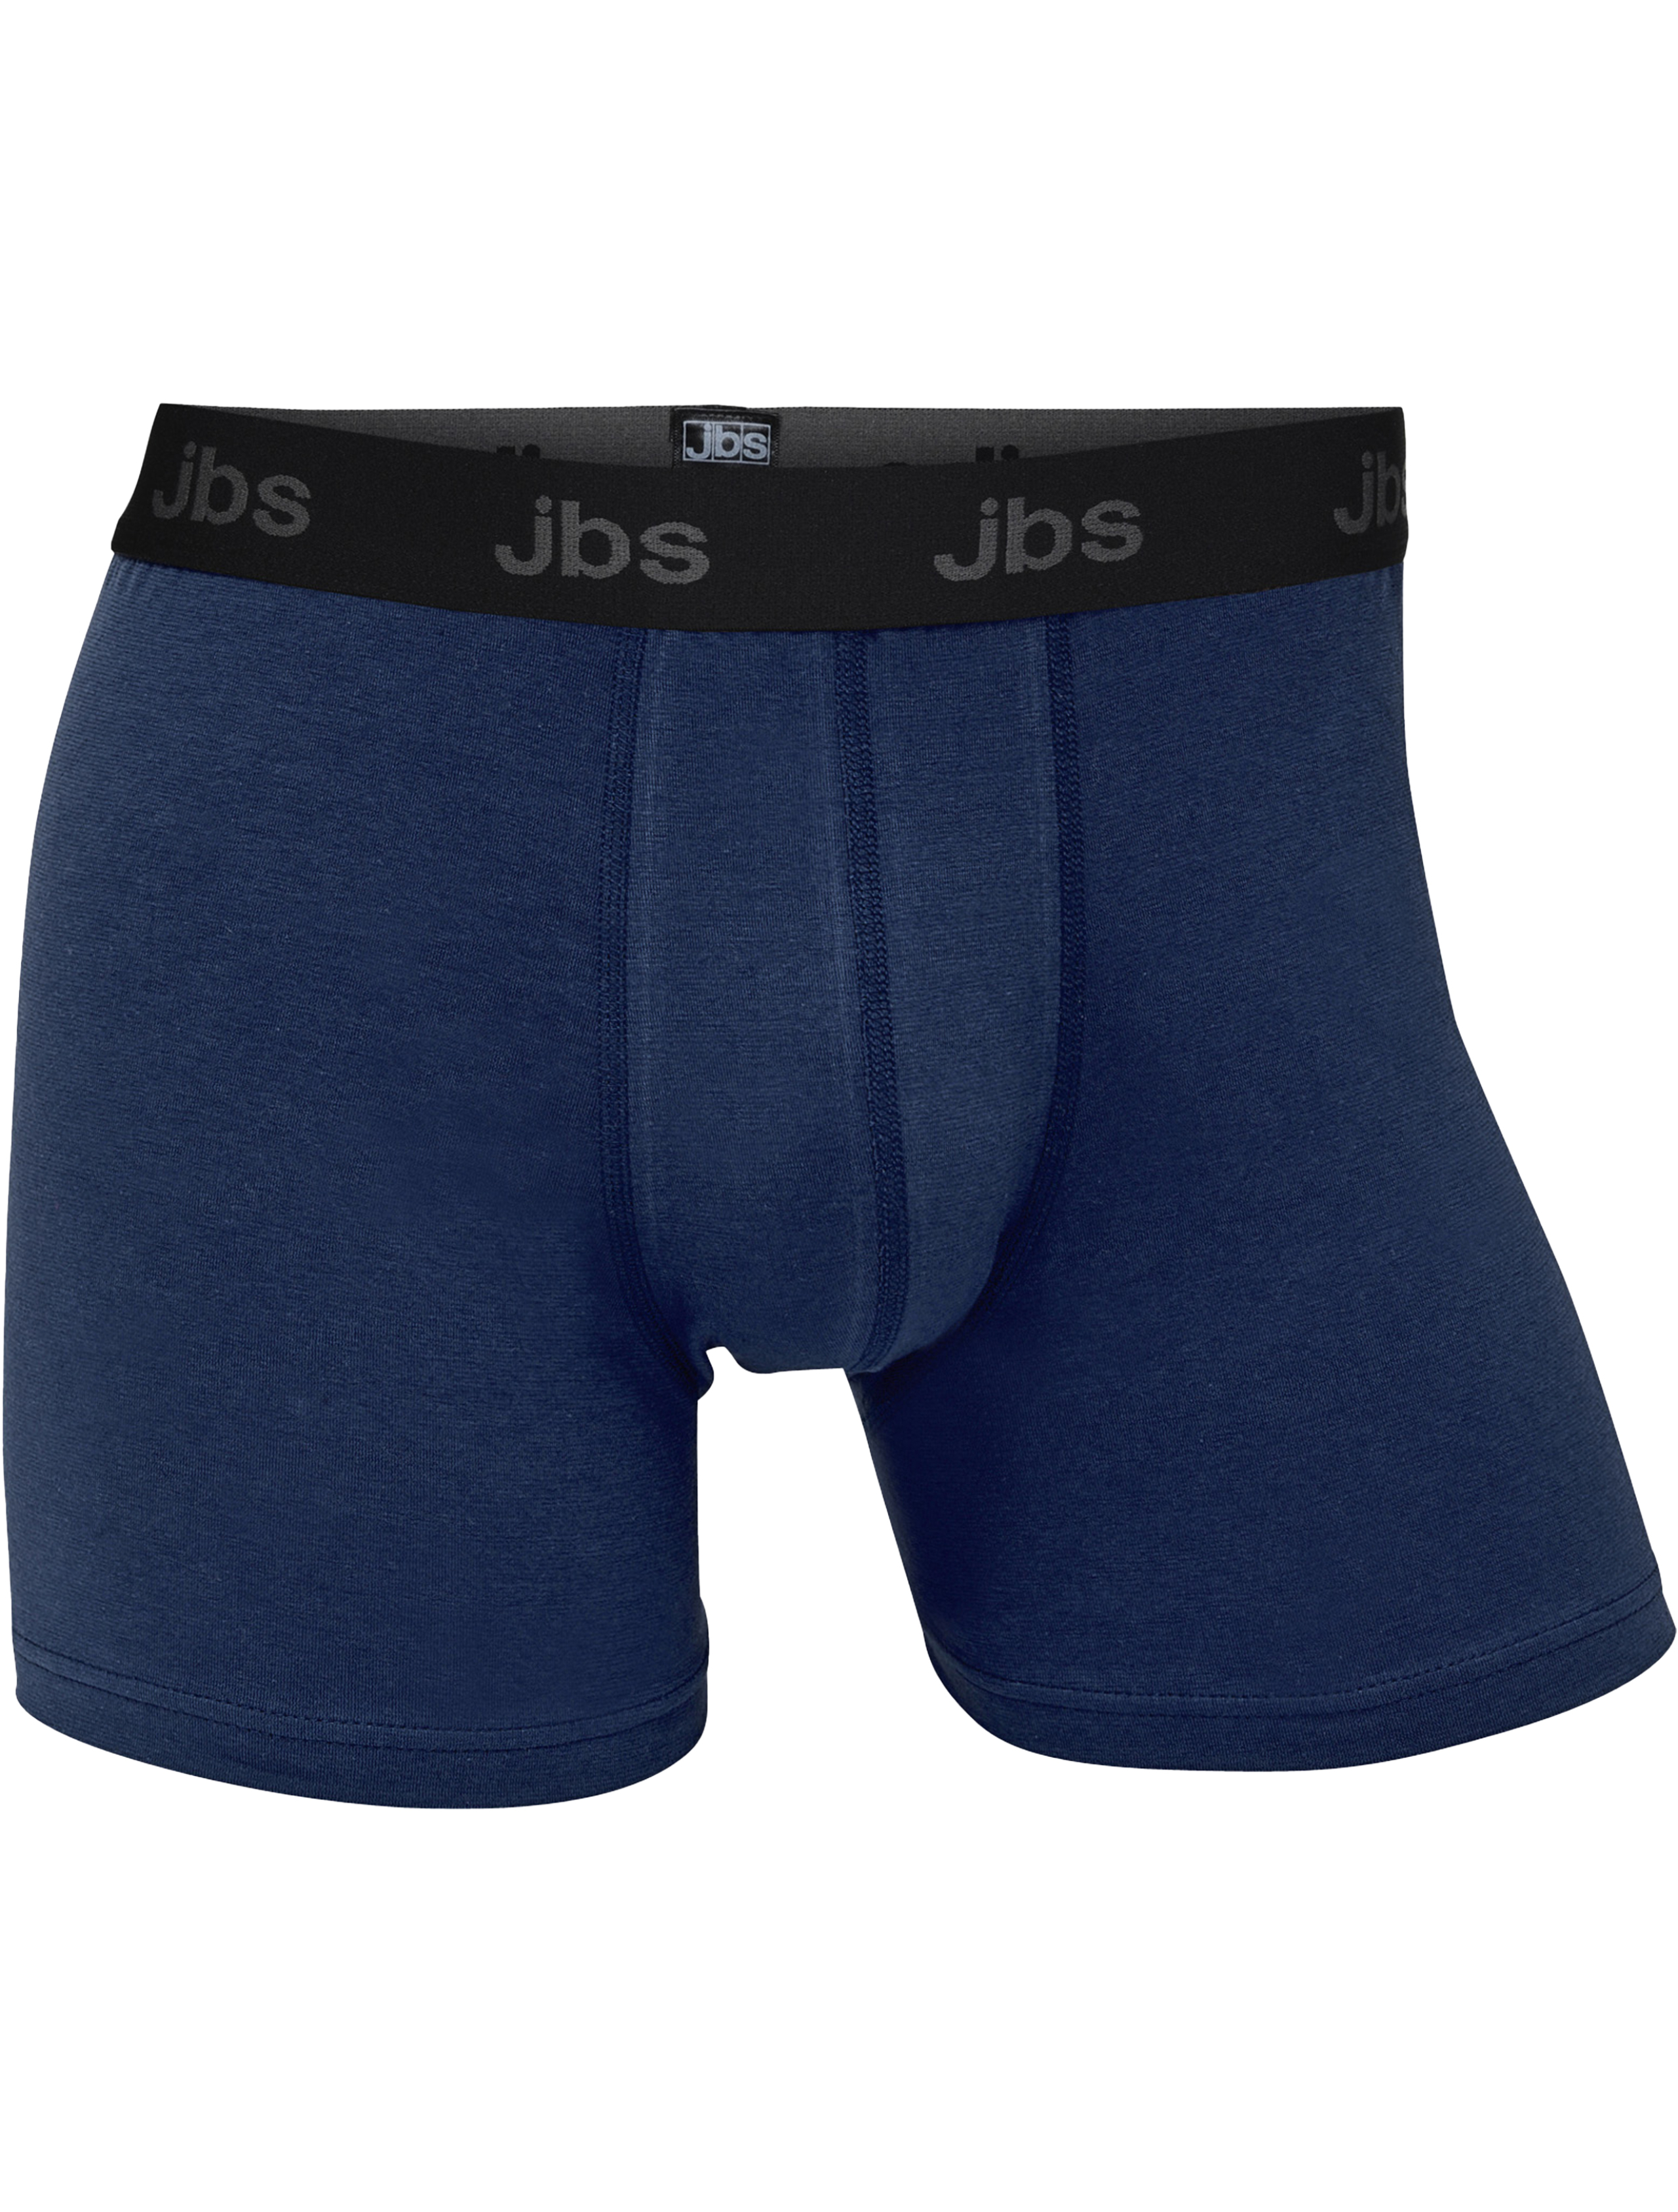 JBS Tights blå / 49 navy